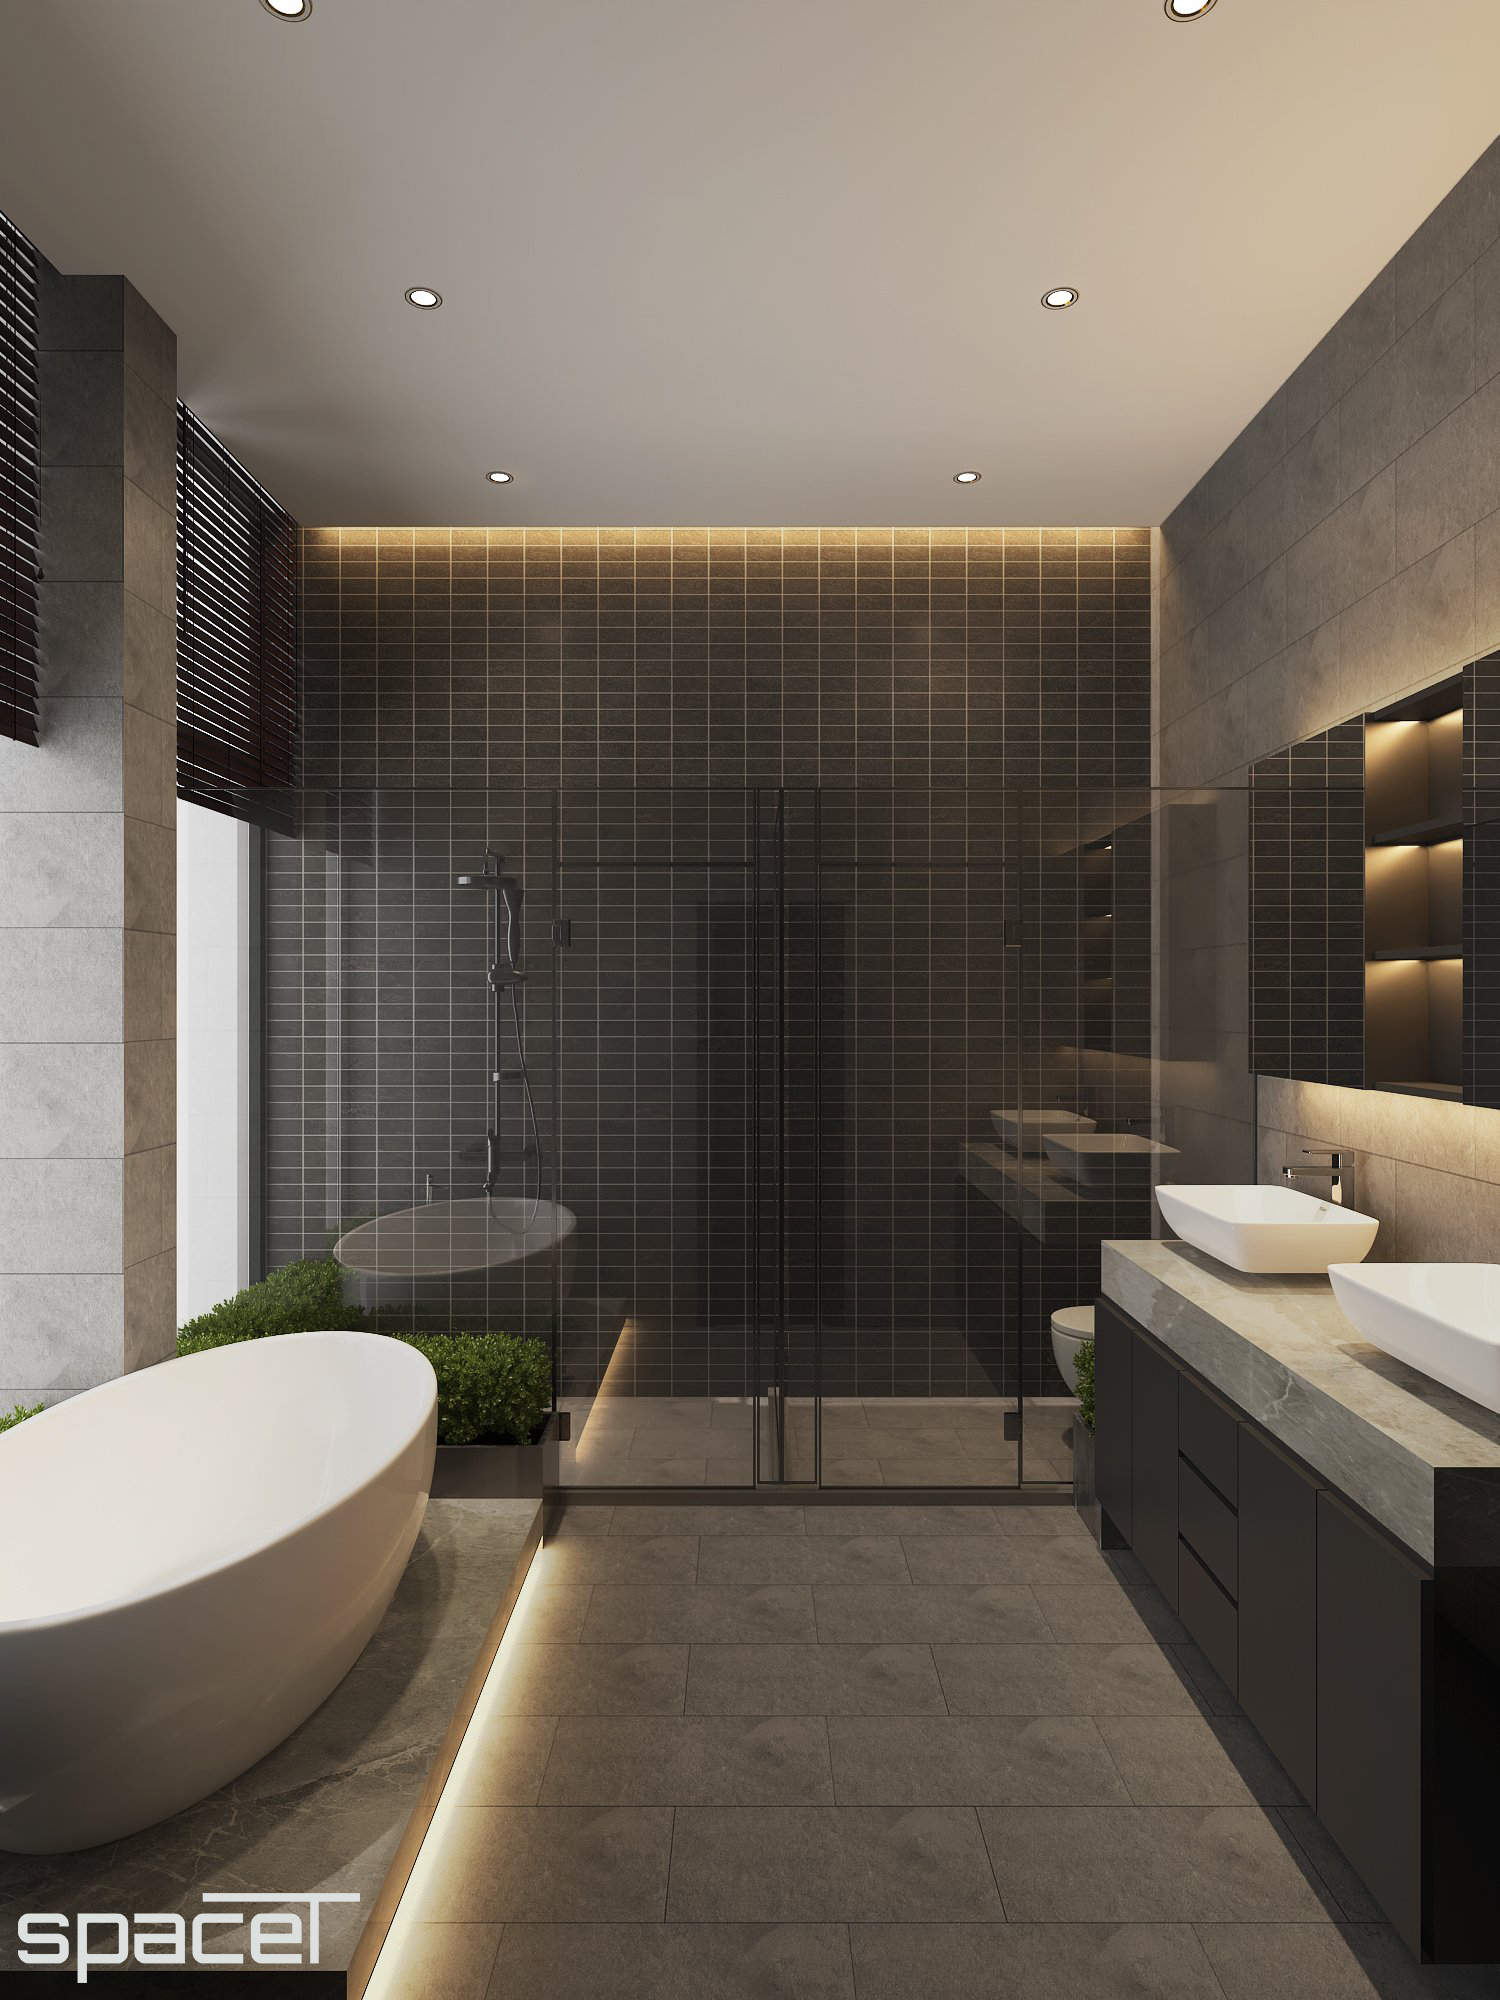 Phòng tắm, phong cách Hiện đại Modern, thiết kế concept nội thất, villa Dầu Tiếng Bình Dương